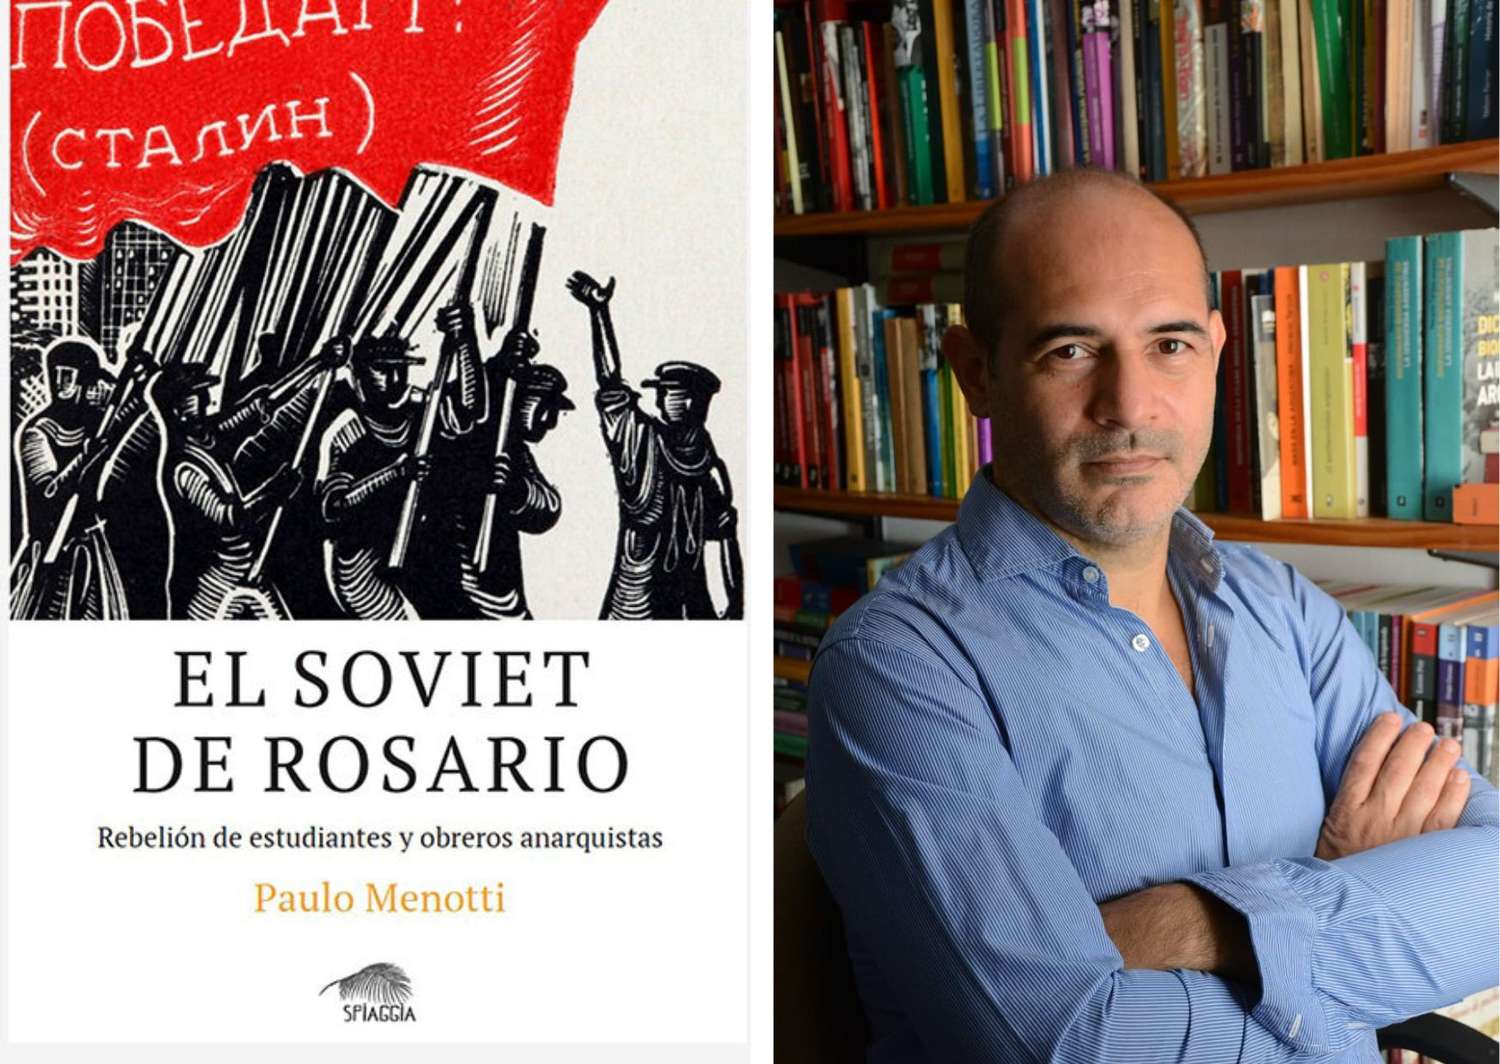 Paulo Menotti presenta su libro “El soviet de Rosario, rebelión de estudiantes y obreros anarquistas” en el Centro Cultural 